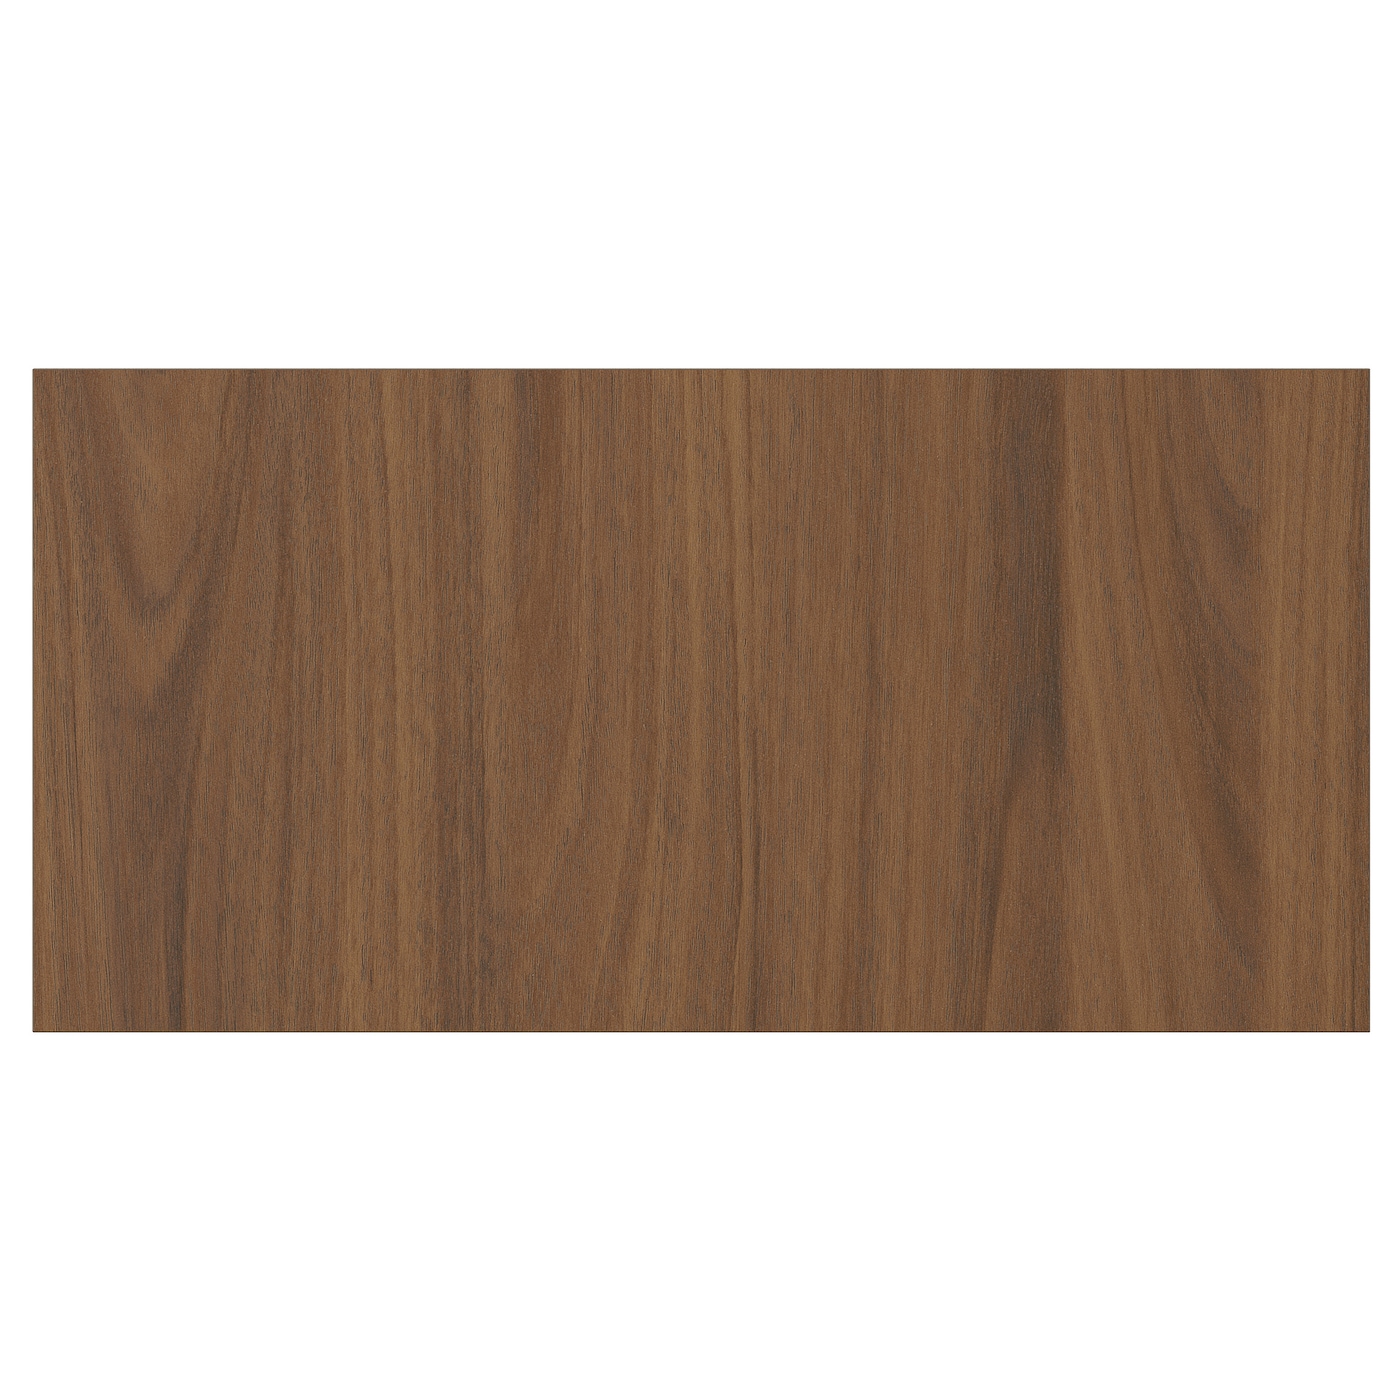 Дверца  - TISTORP IKEA/ ТИСТОРП ИКЕА,  40х20 см, коричневый орех